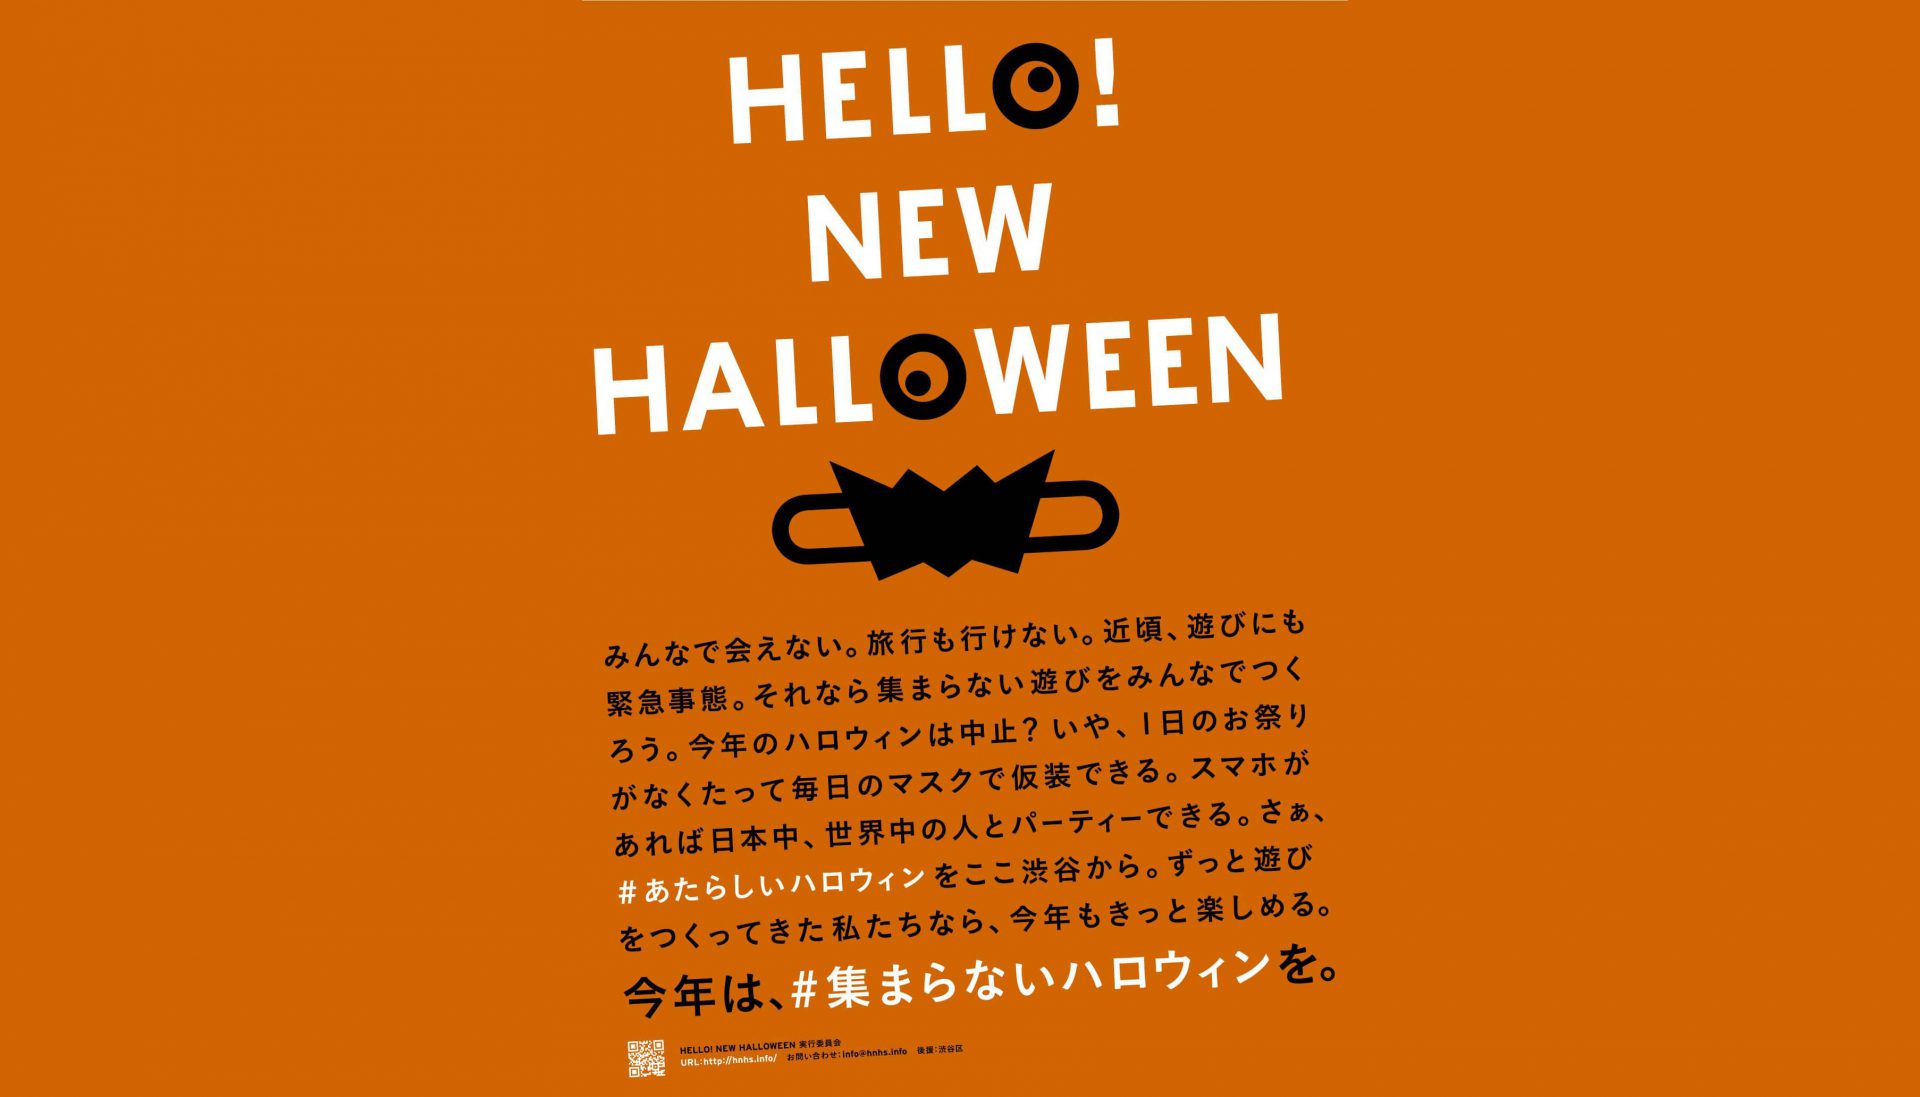 集まらないハロウィン” ～「HELLO! NEW HALLOWEEN」プロジェクト 